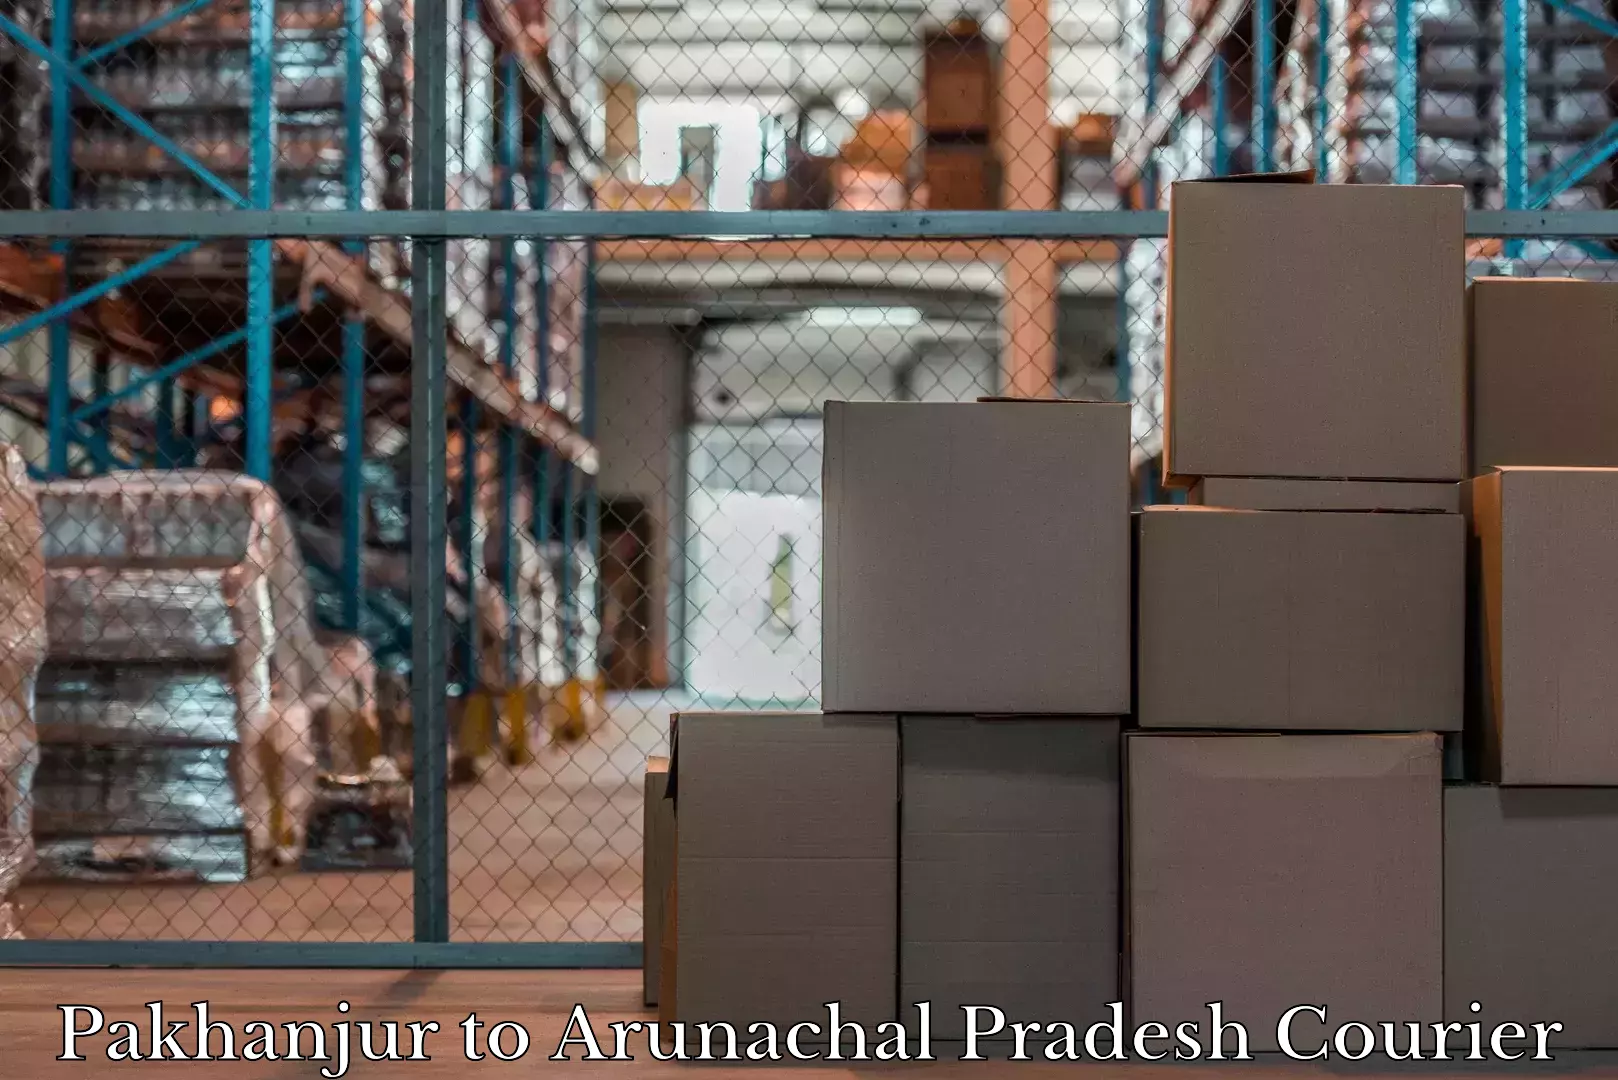 Luggage delivery system Pakhanjur to Arunachal Pradesh